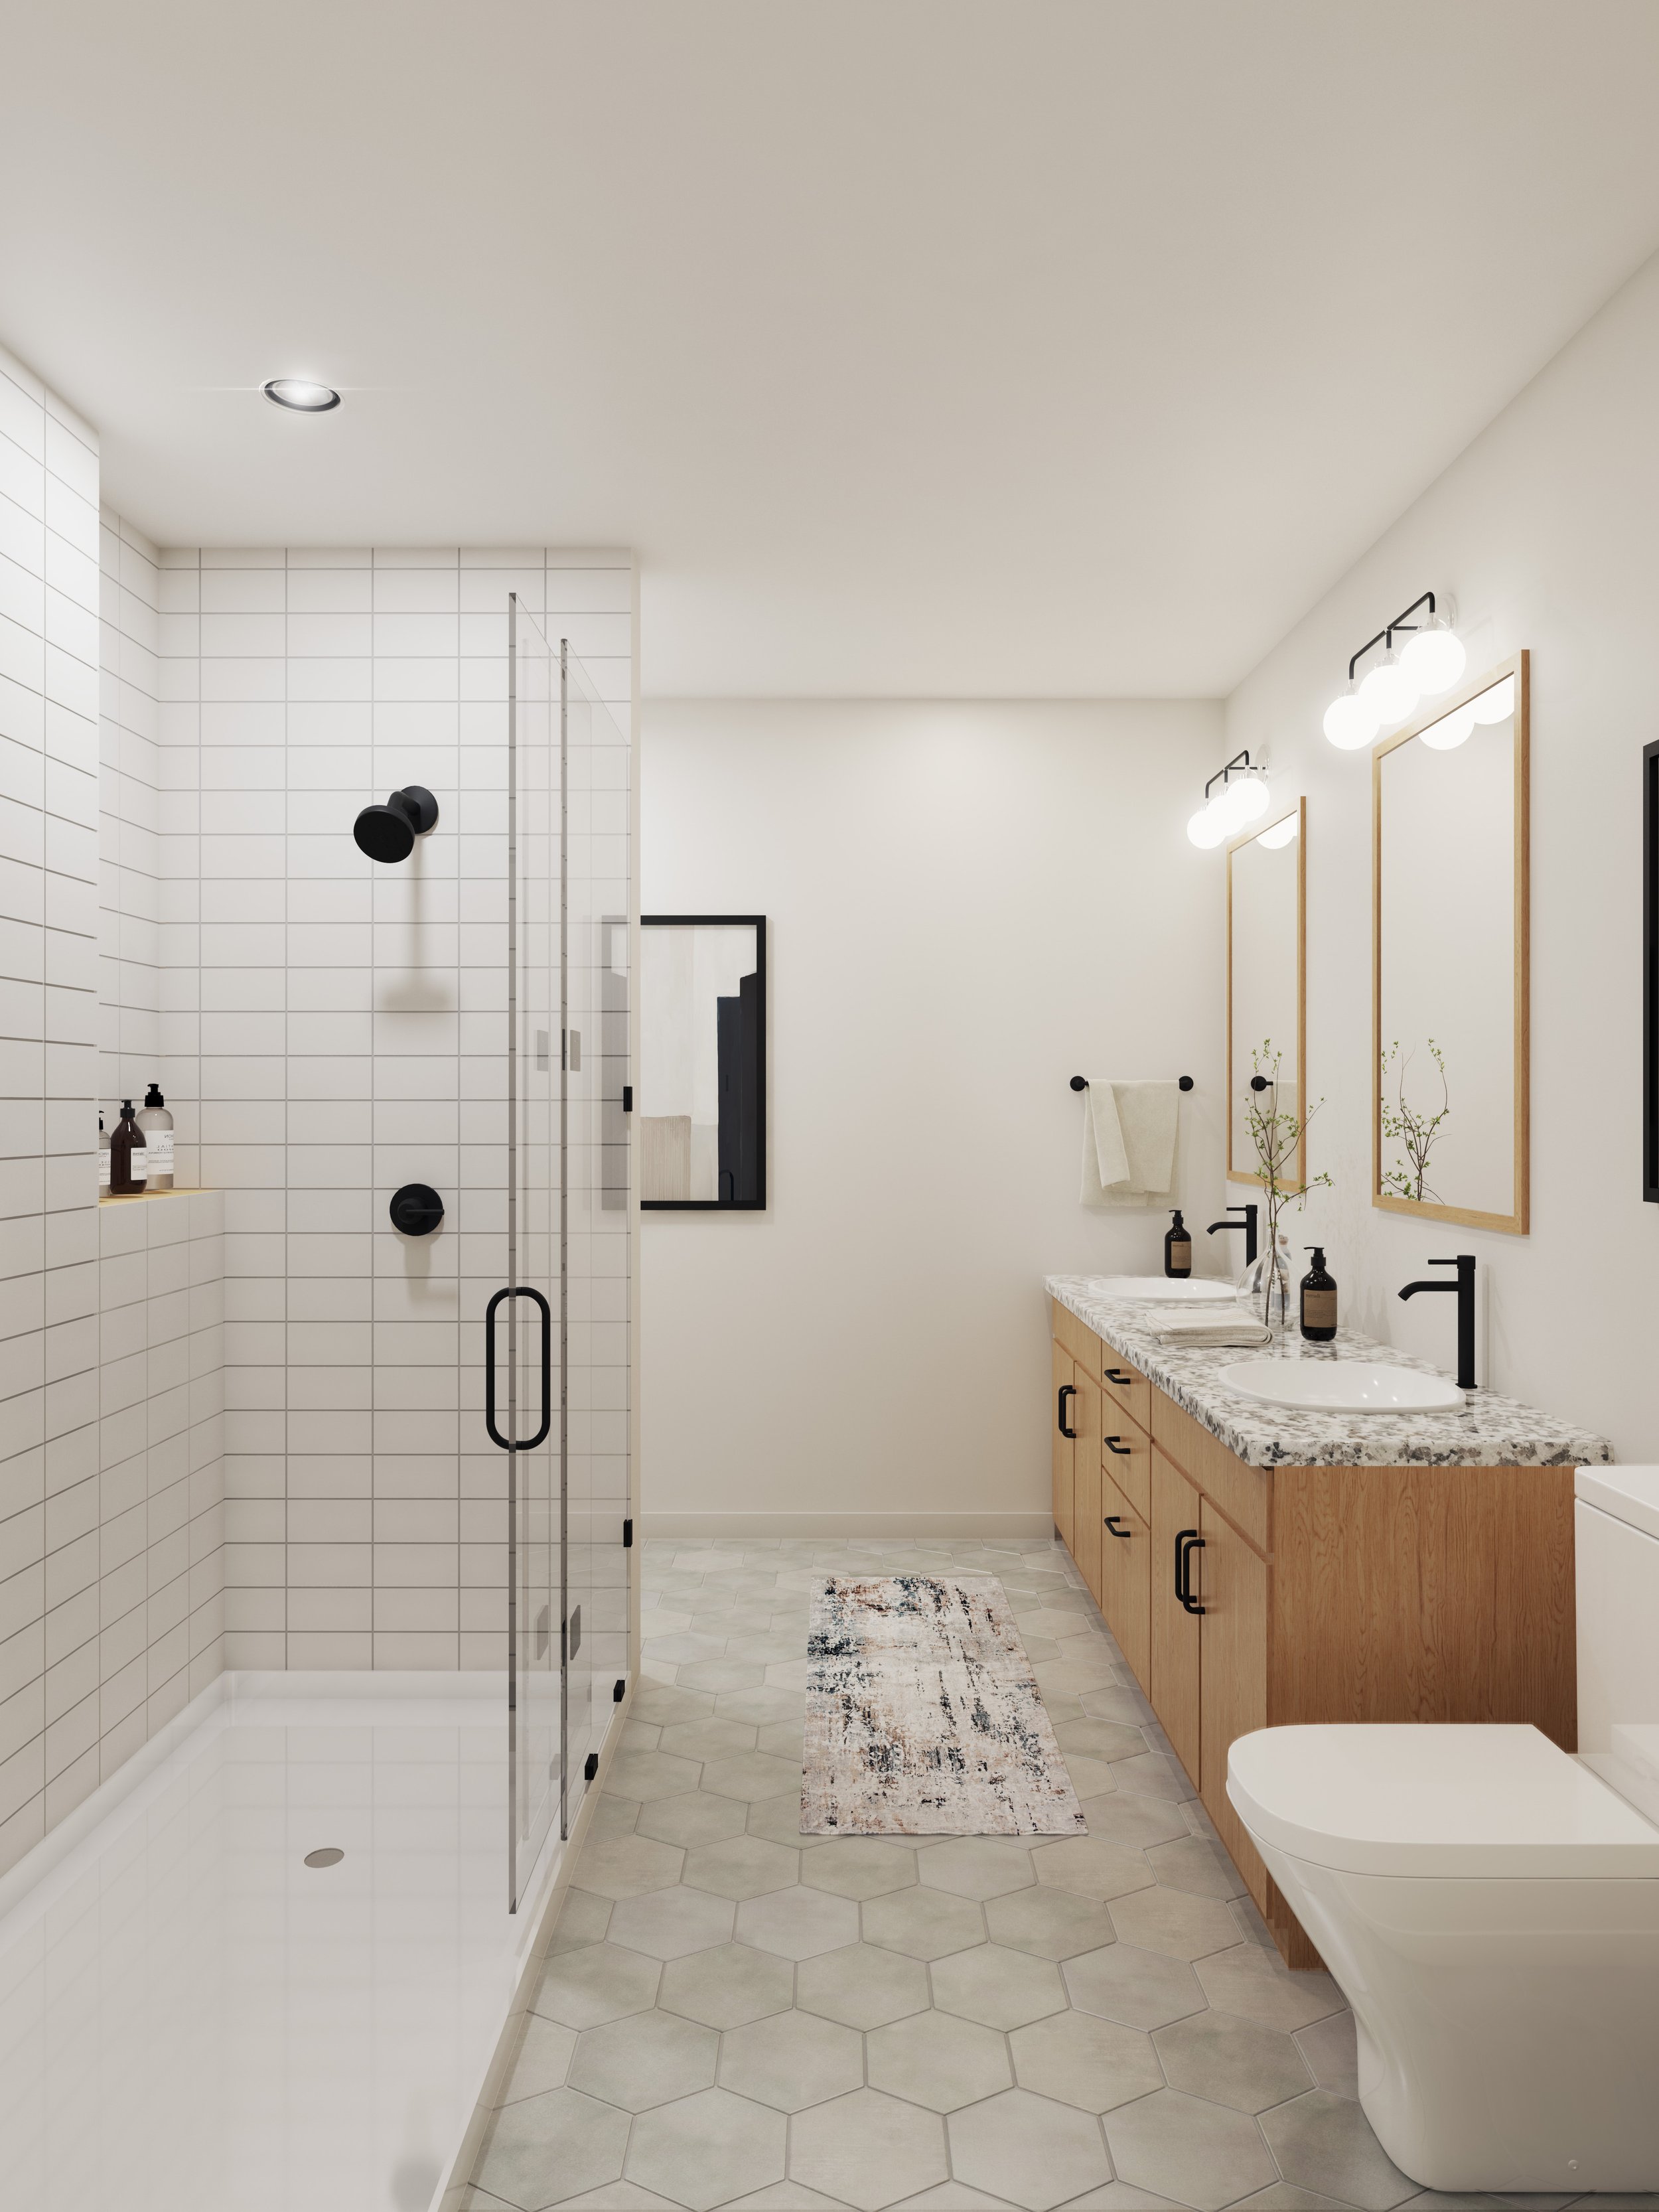 KLS-Interior-Bathroom-Cam01-Final-00.jpg